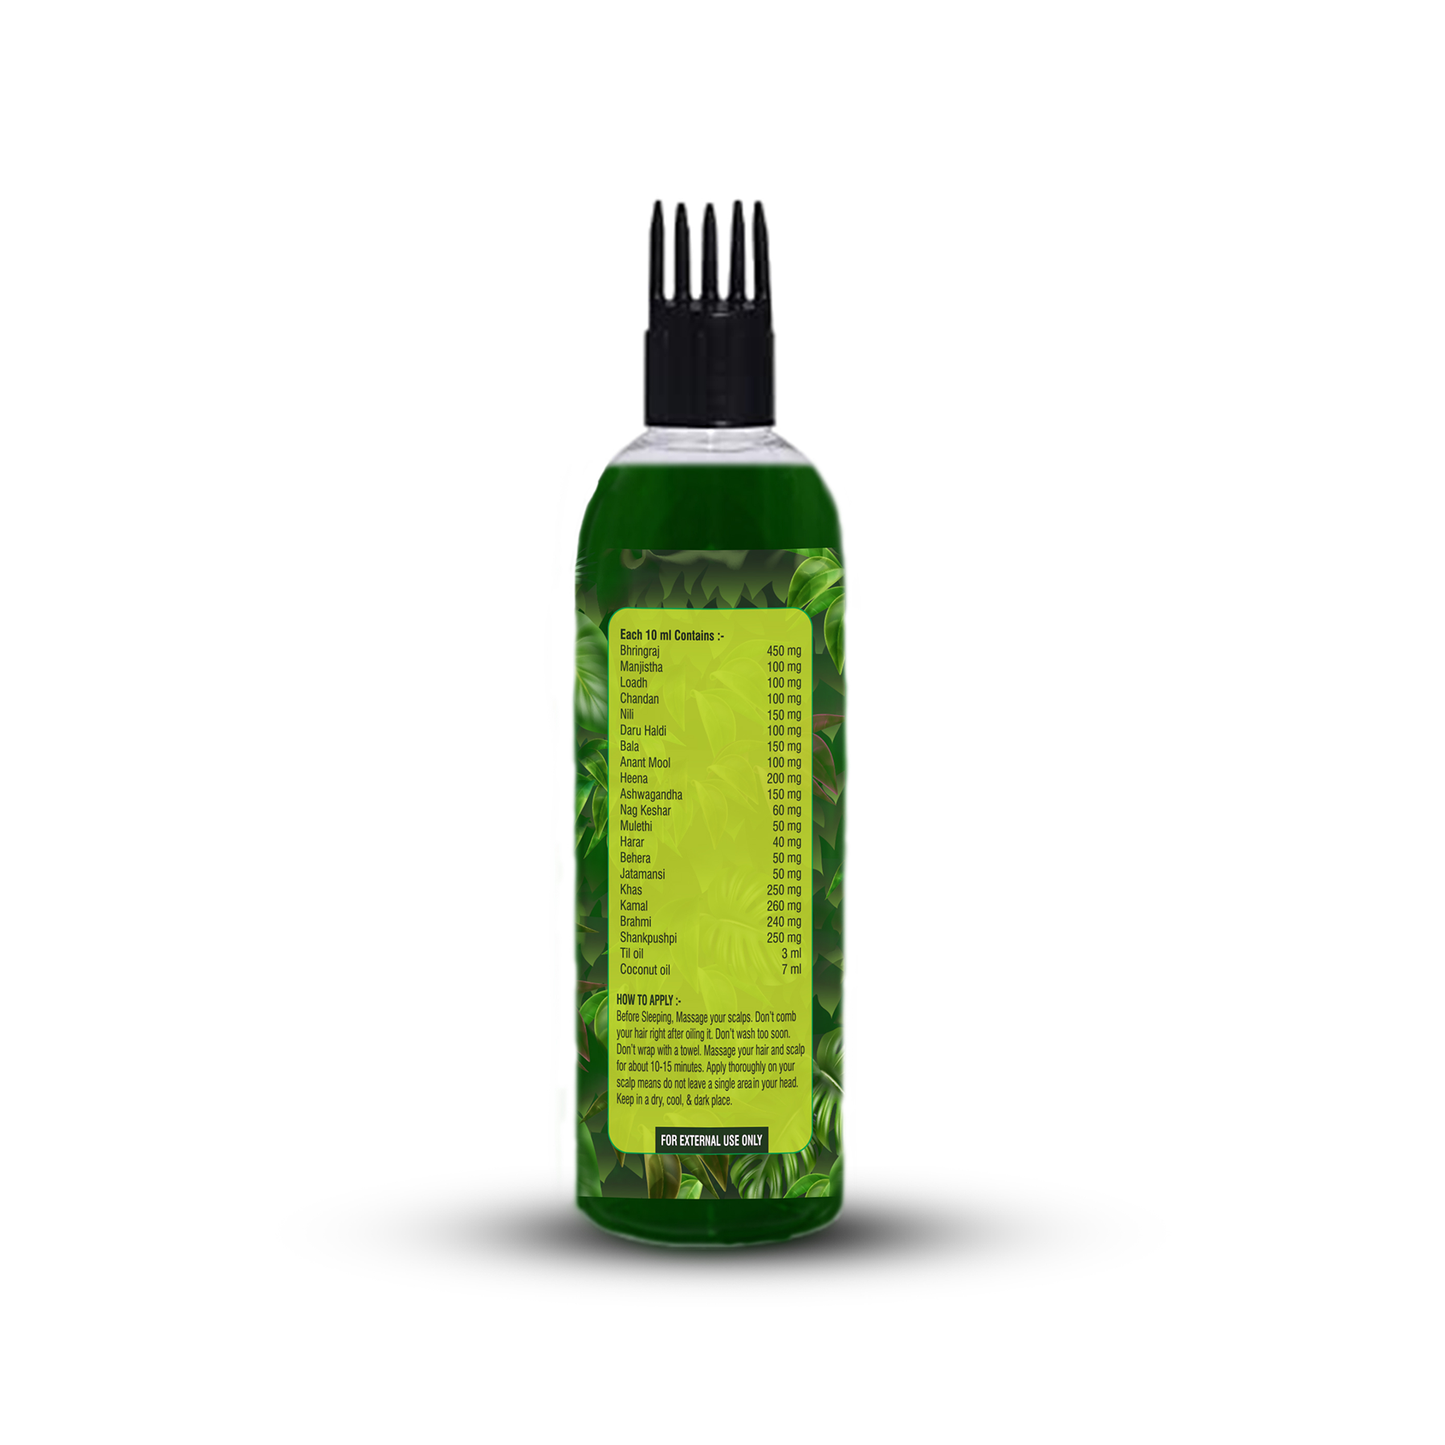 Zenius Hair Pro Hair Growth, Hair Fall and Dandruff Control Oil, 100ml